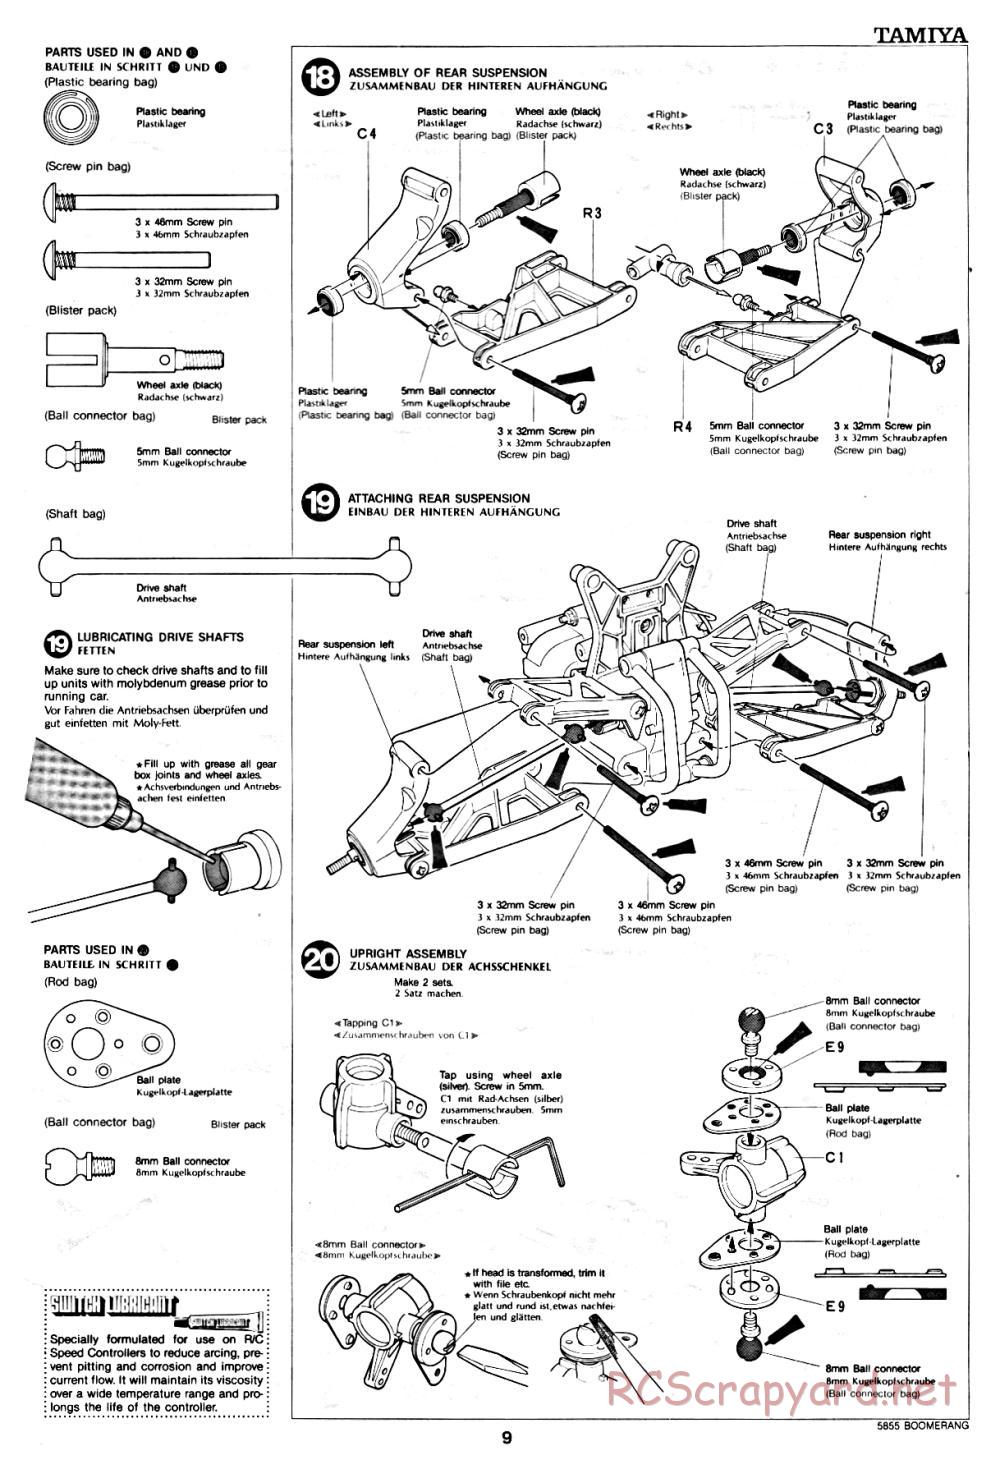 Tamiya - The Boomerang - 58055 - Manual - Page 9